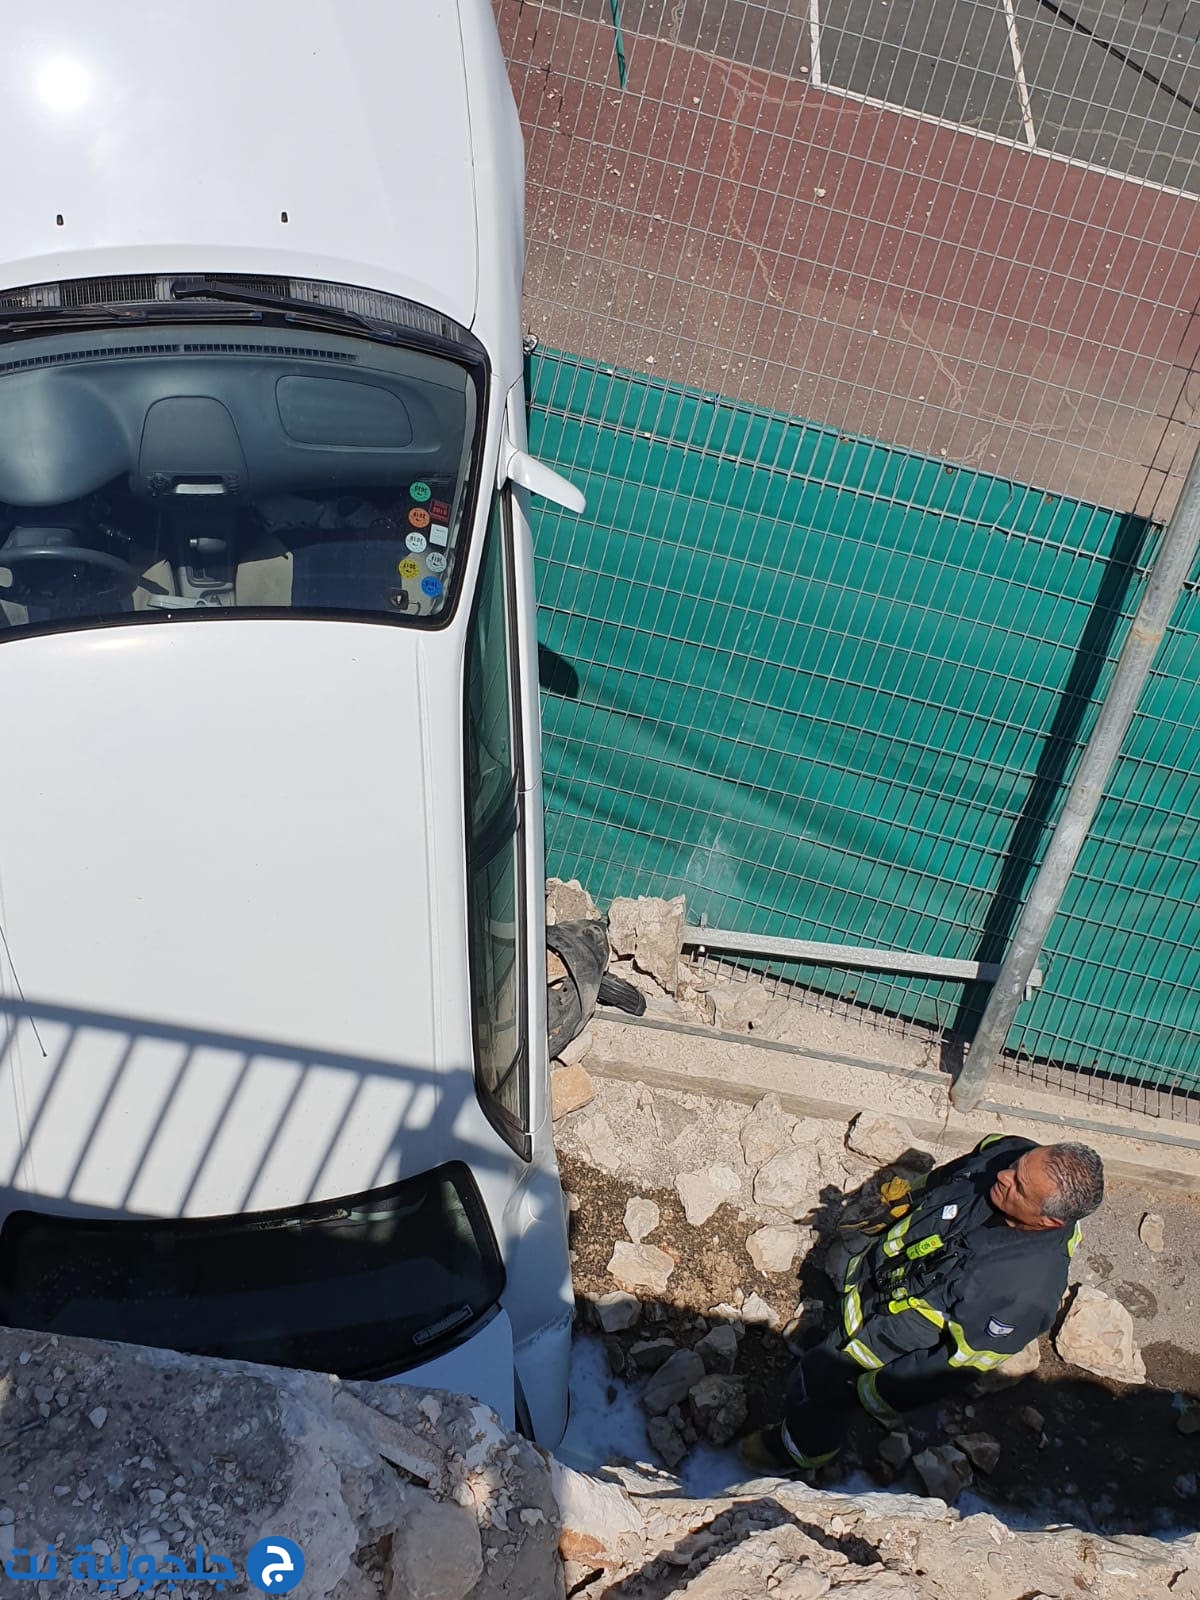 انقلاب سيارة نحو منحدر بارتفاع 4 امتار في حيفا